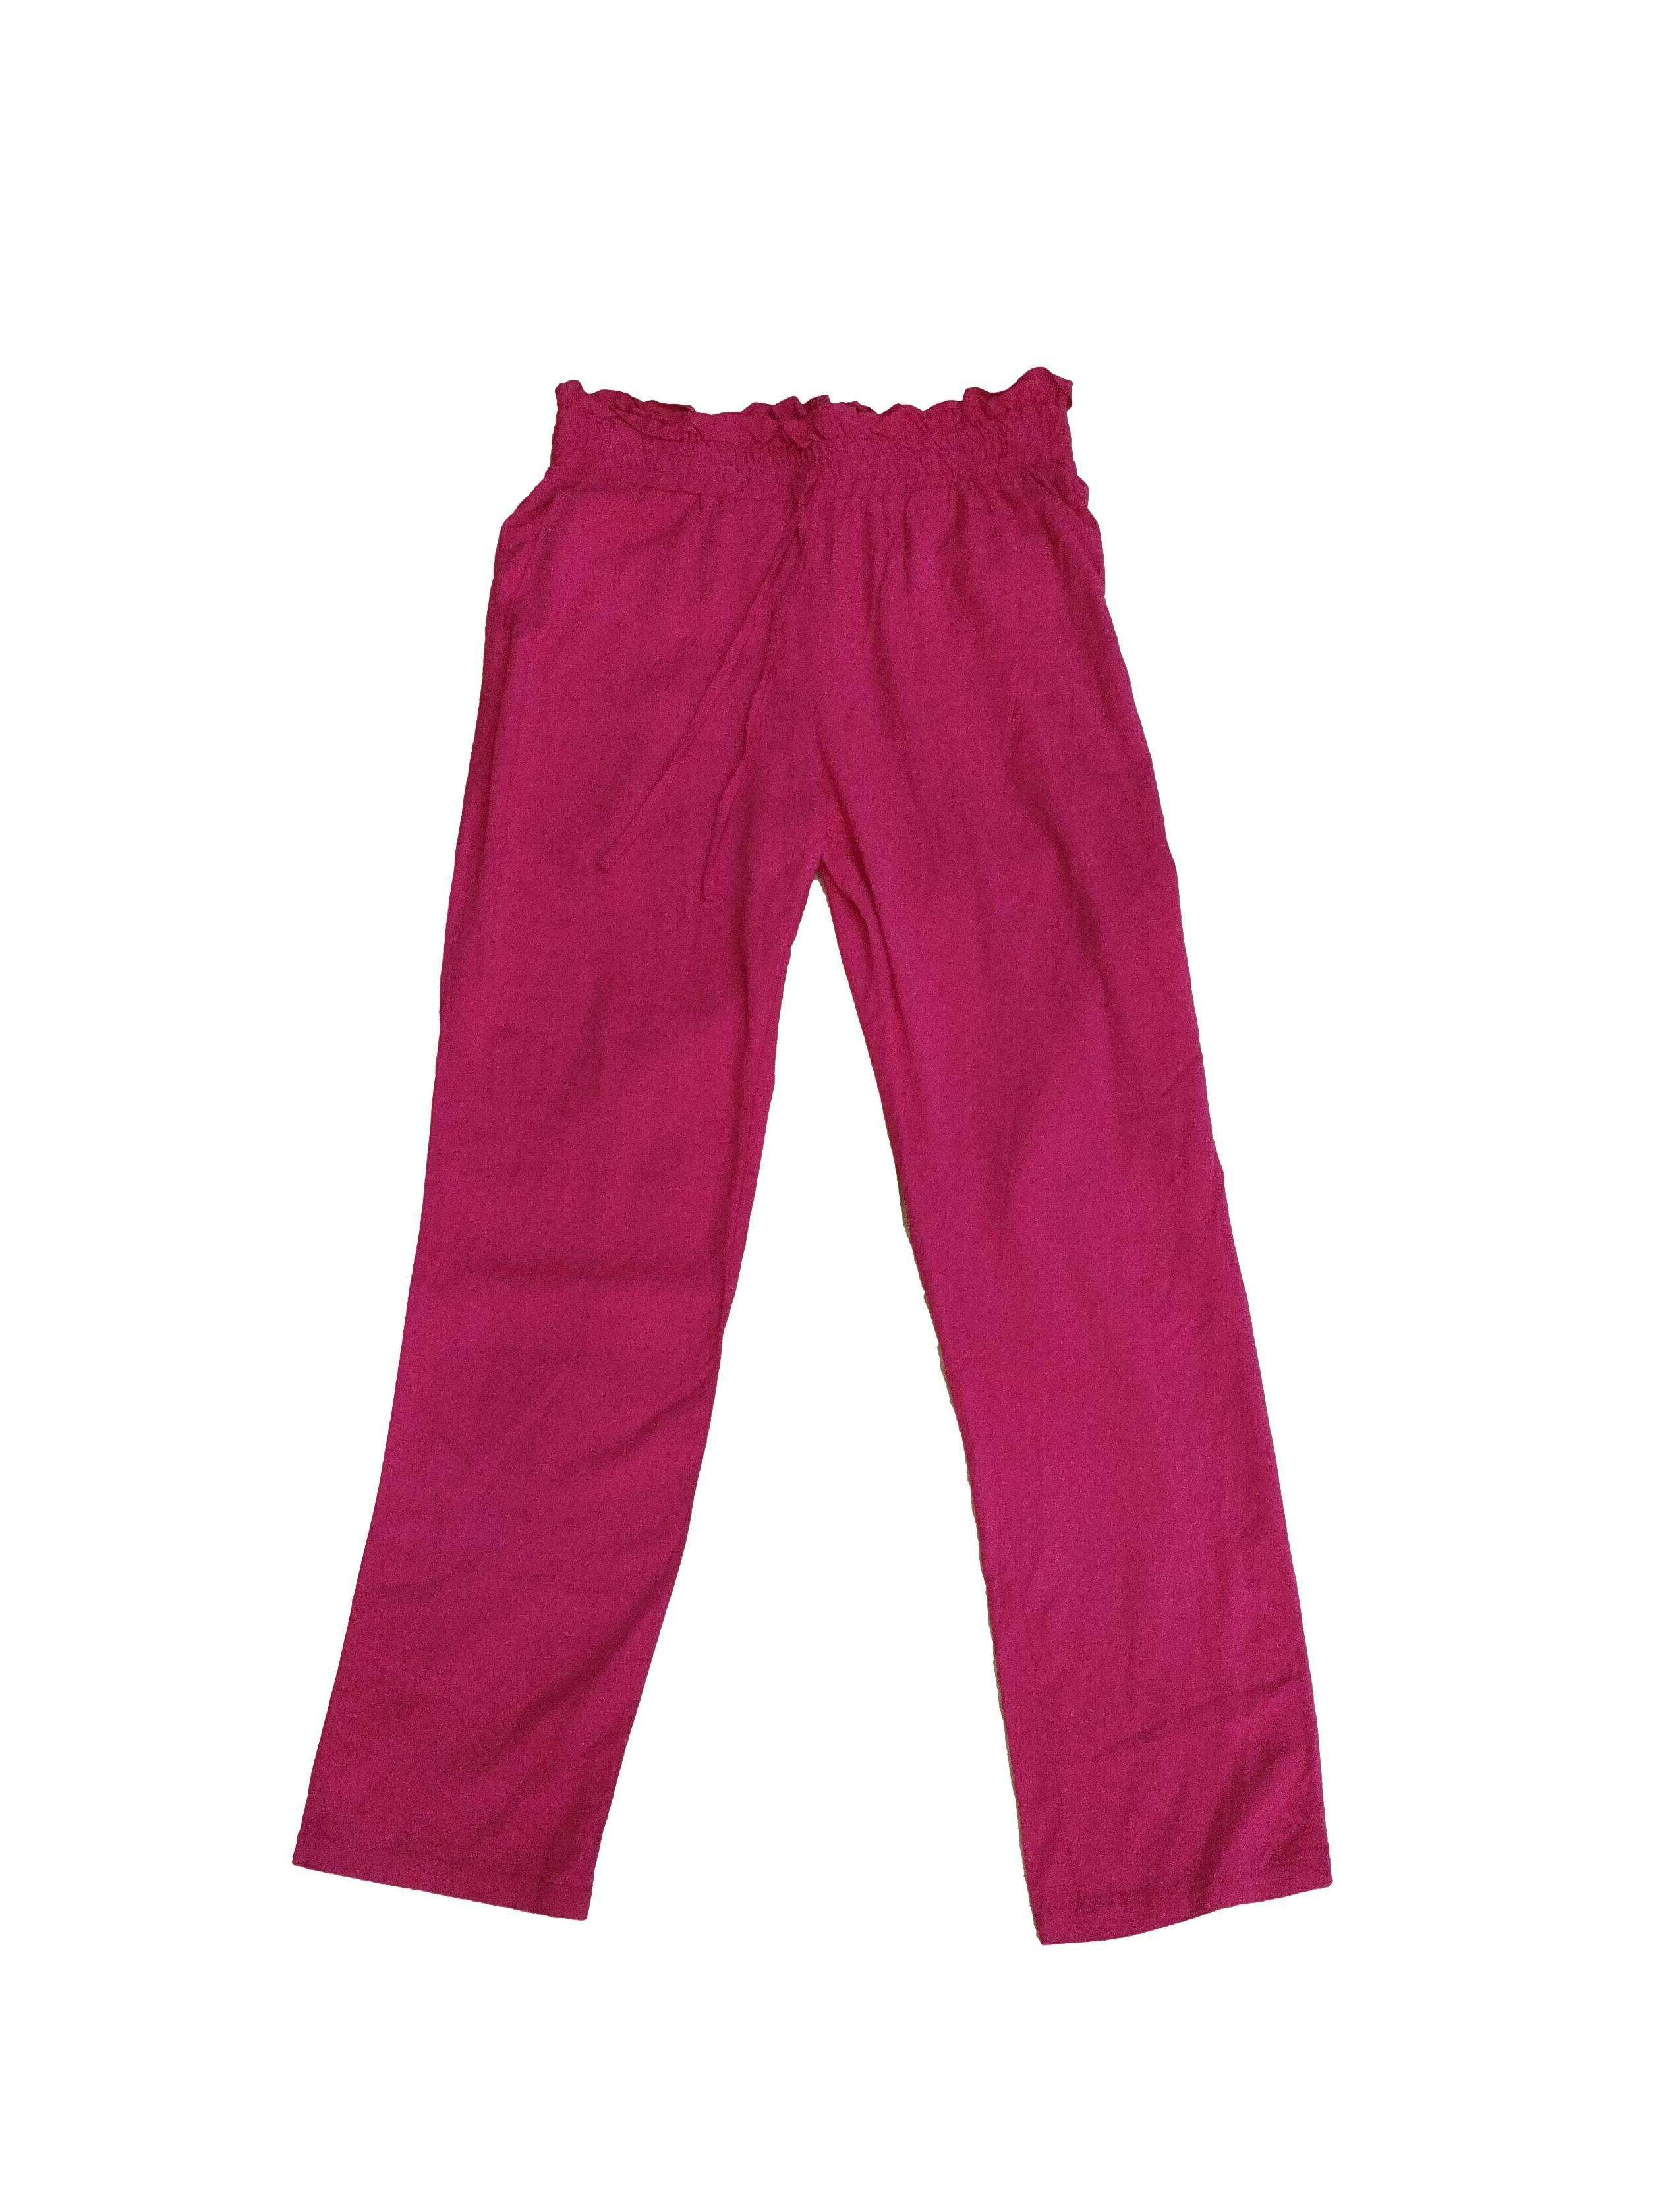 Pantalón Settimana fucsia tipo chalis, pretina elástica y bolsillos laterales. Cintura 70 cm, Tiro 20 cm, Largo 96 cm